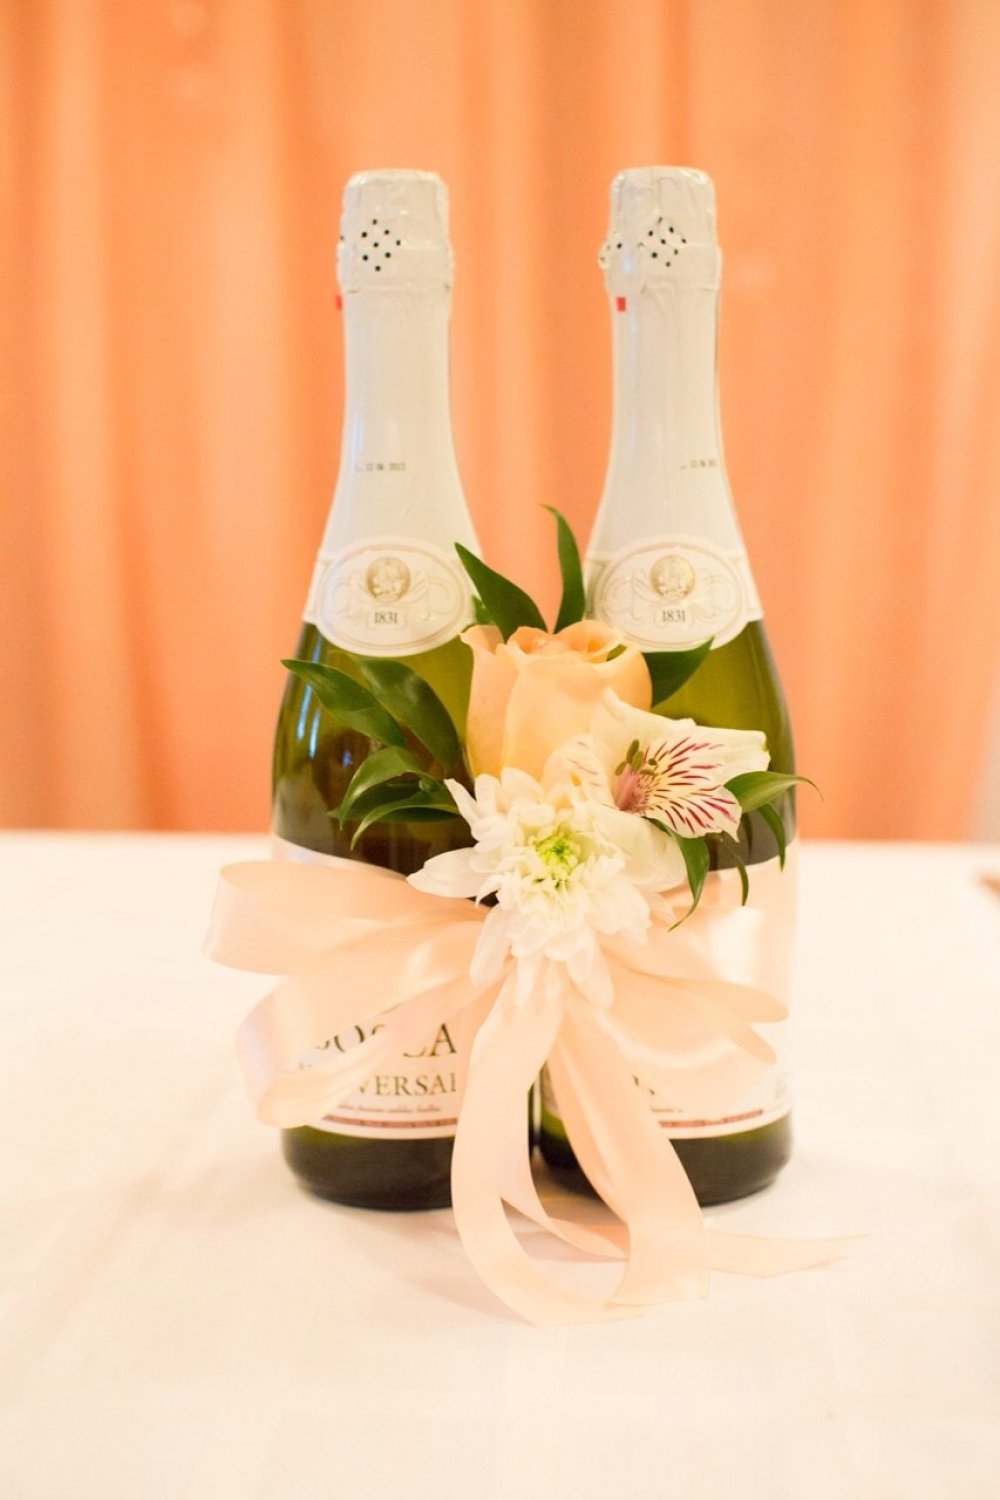 Как украсить бутылку шампанского на свадьбу своими руками: мастер-класс украшения